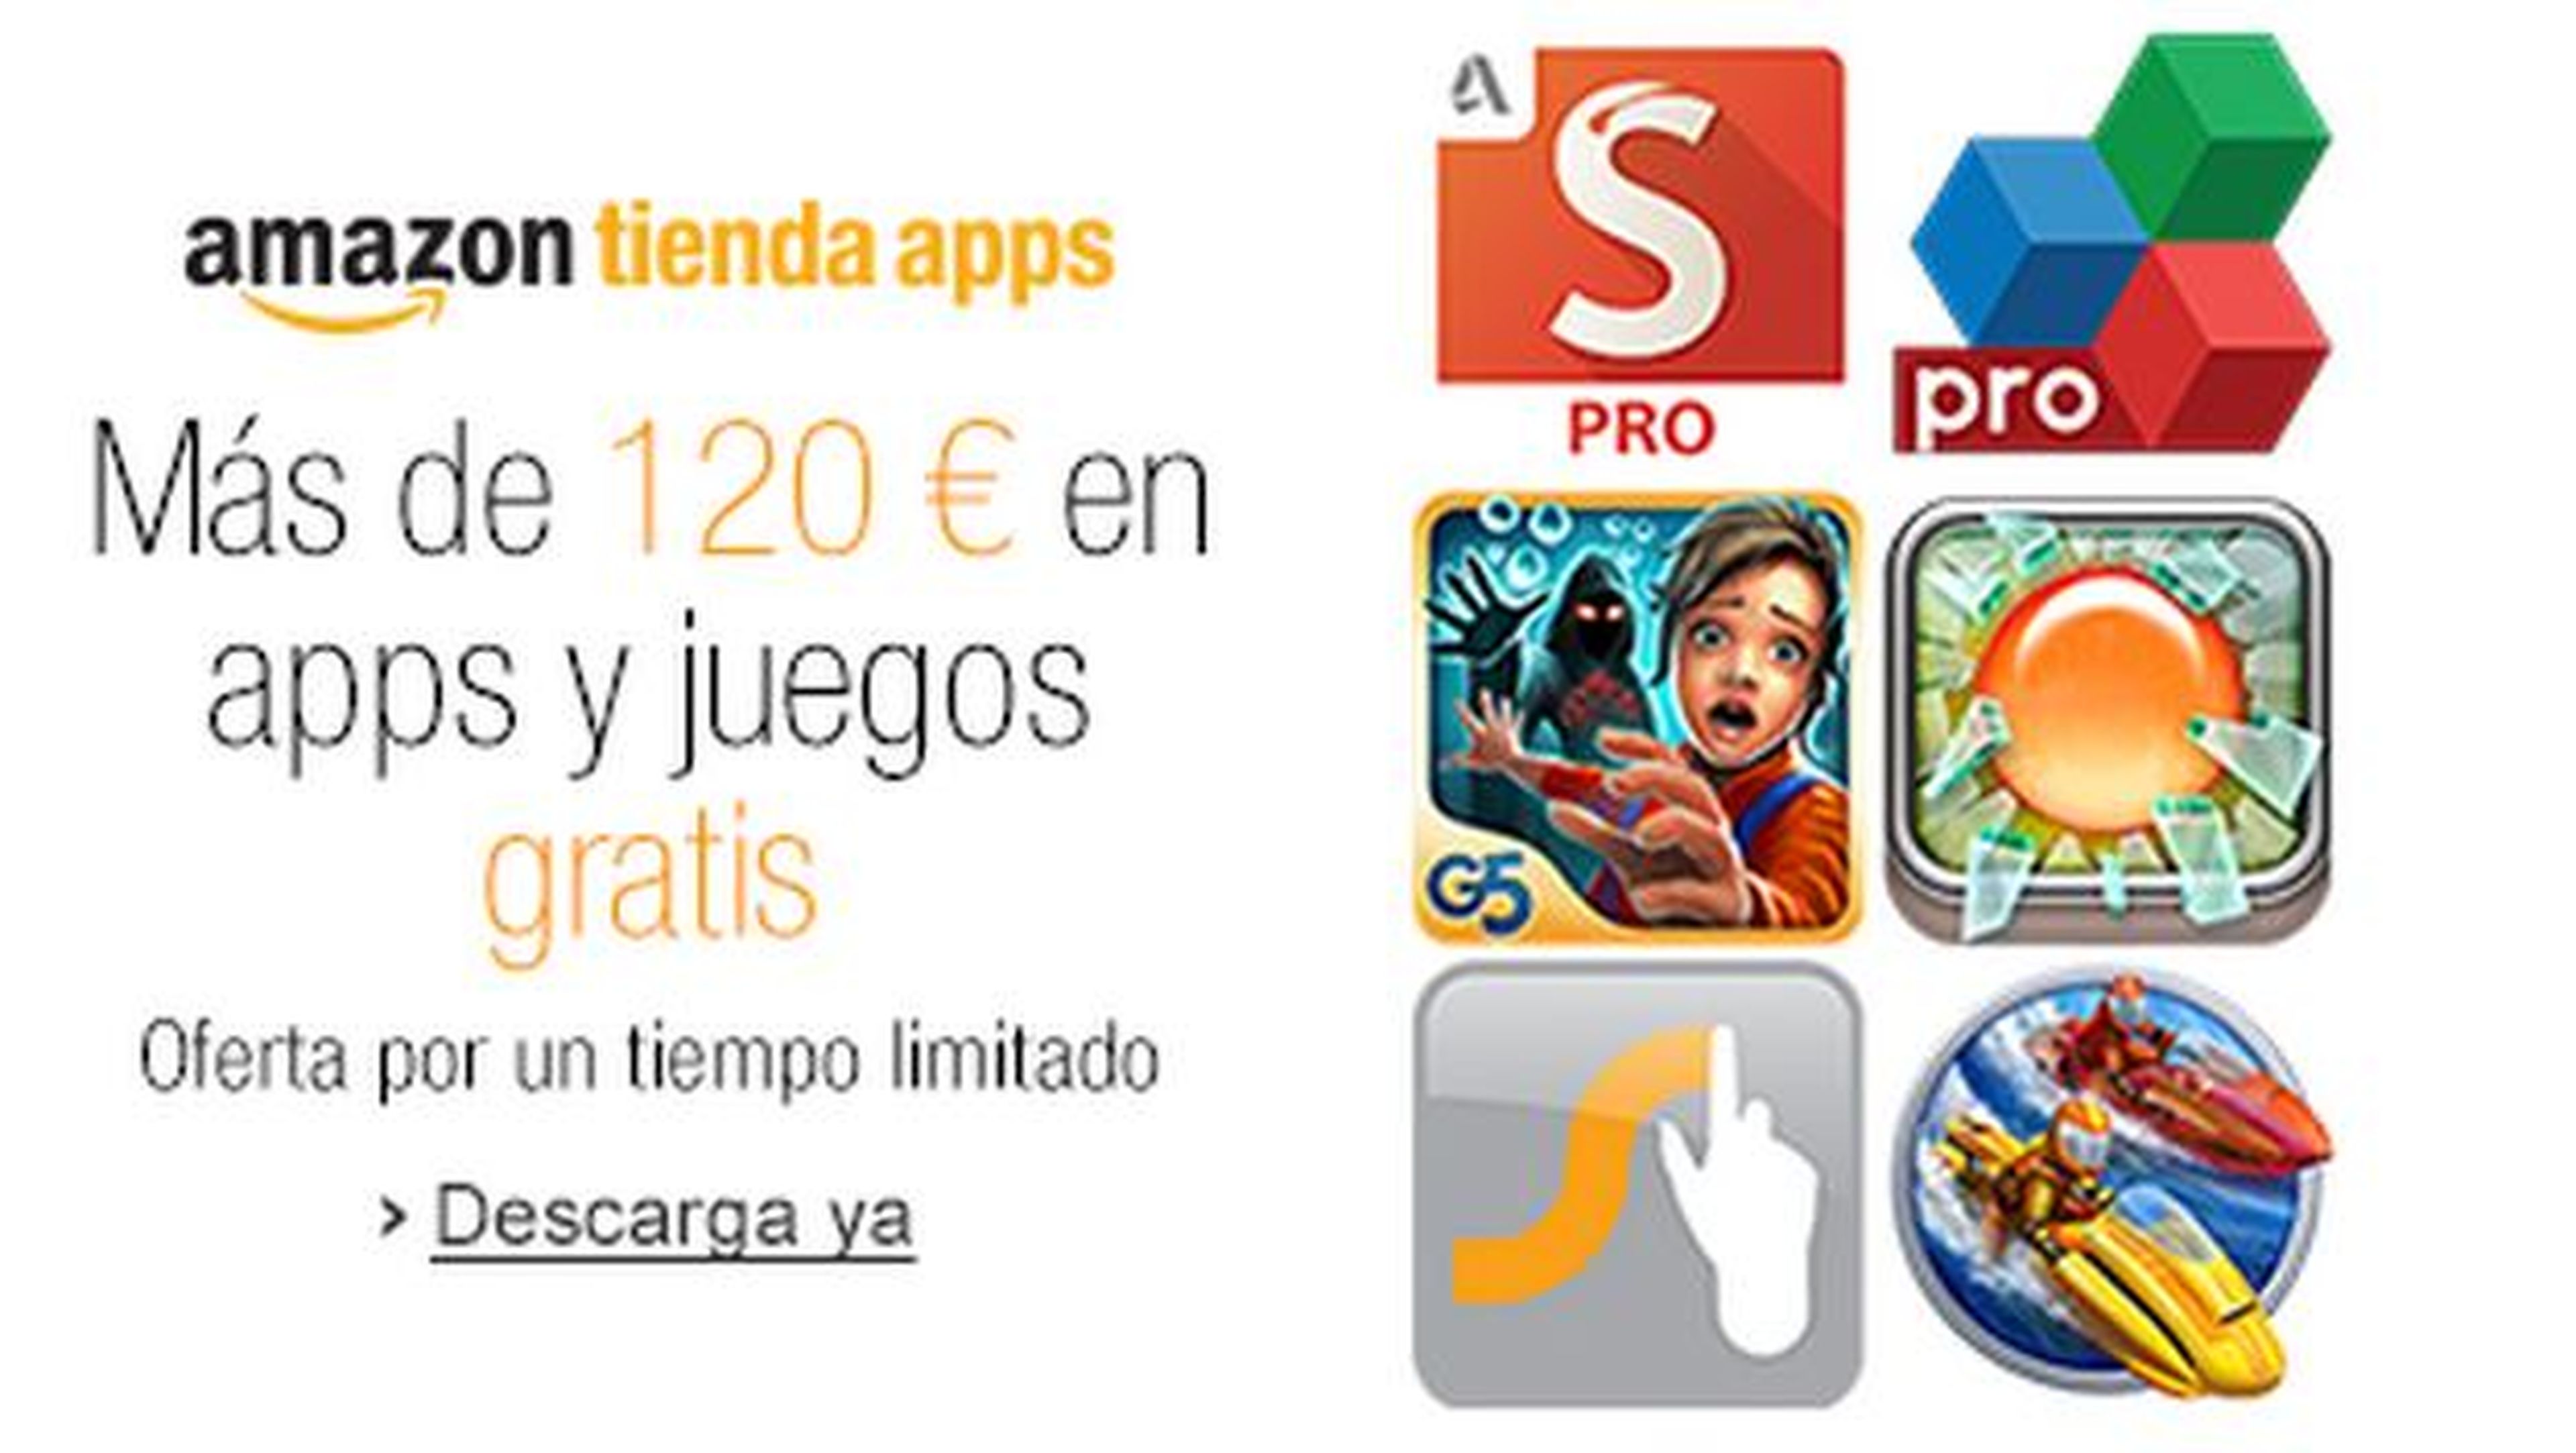 Amazon España, a través de su Tienda de Apps, regala apps y juegos Android de pago, gratis, por valor de 120€ ¡Corre!